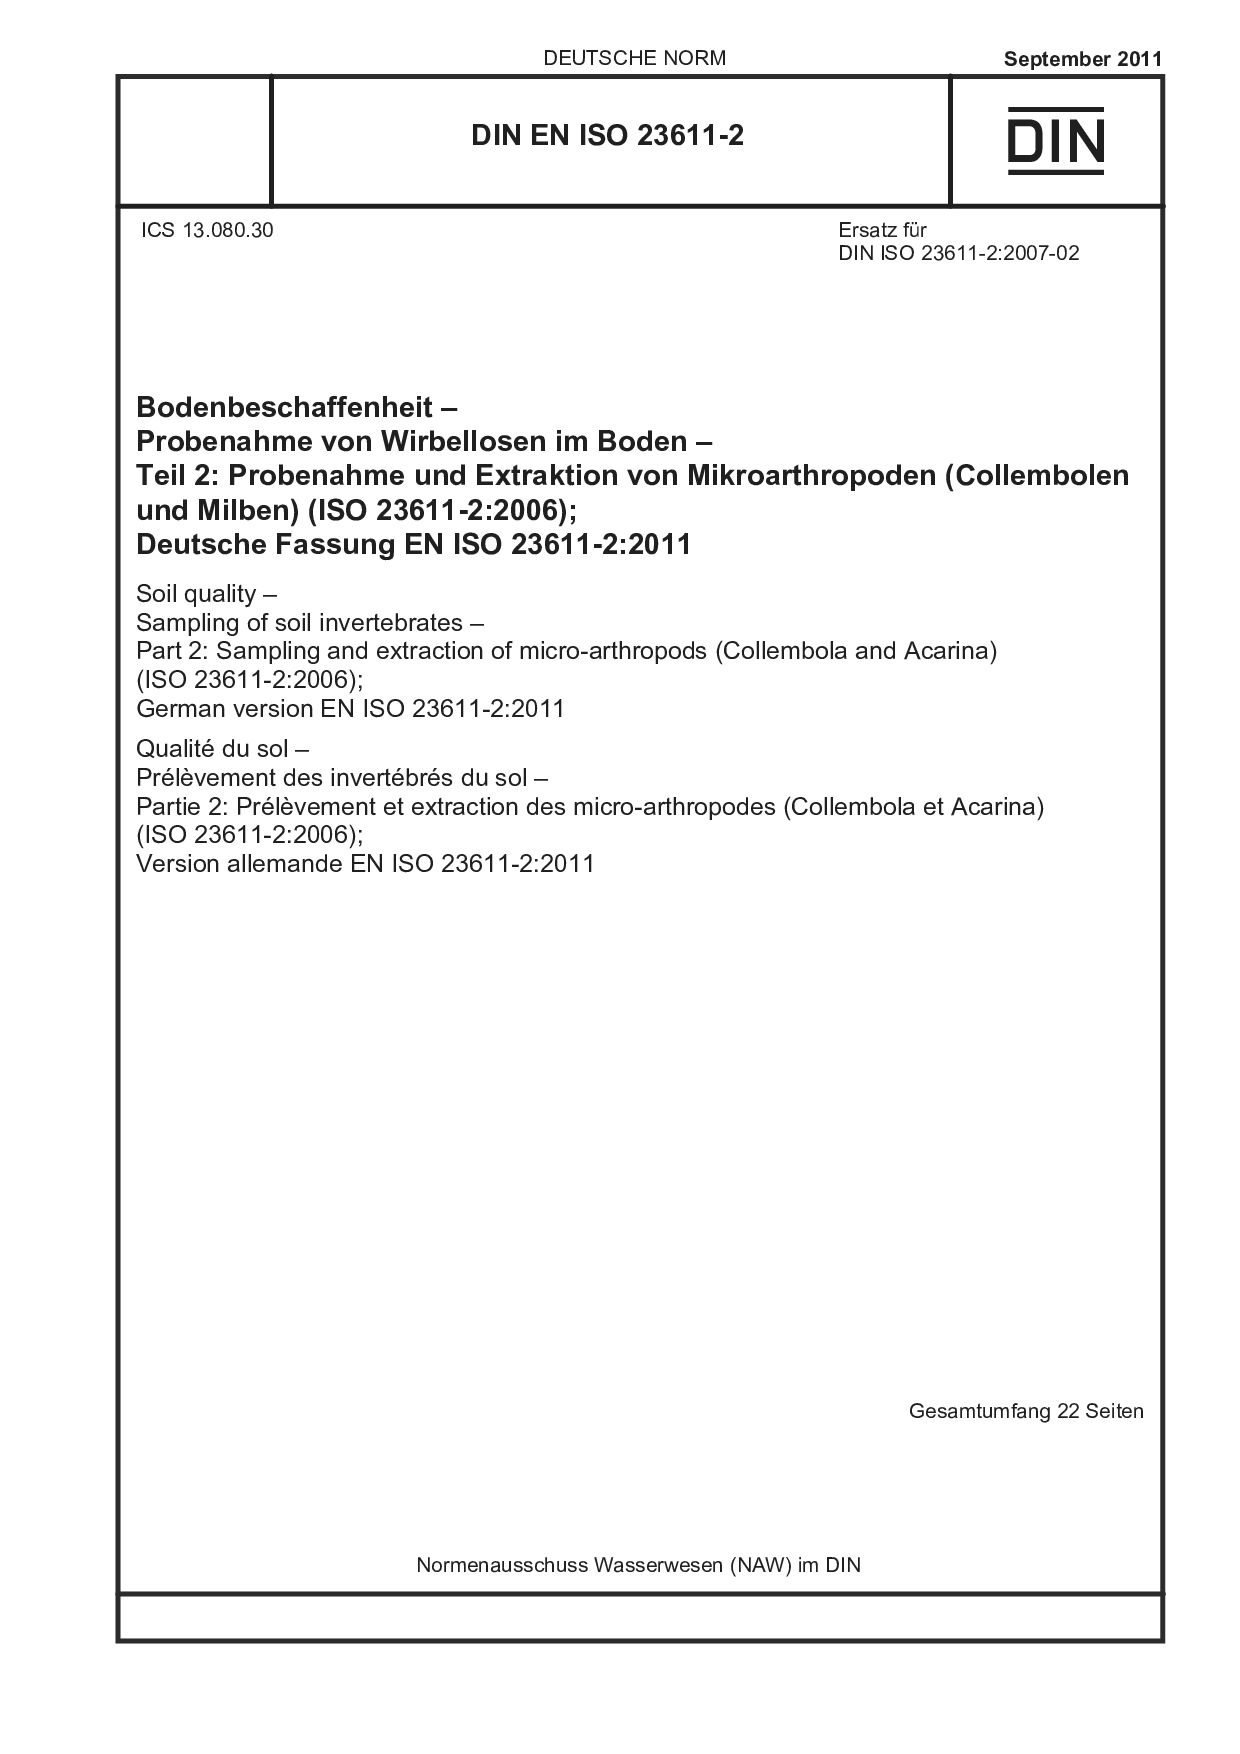 DIN EN ISO 23611-2:2011